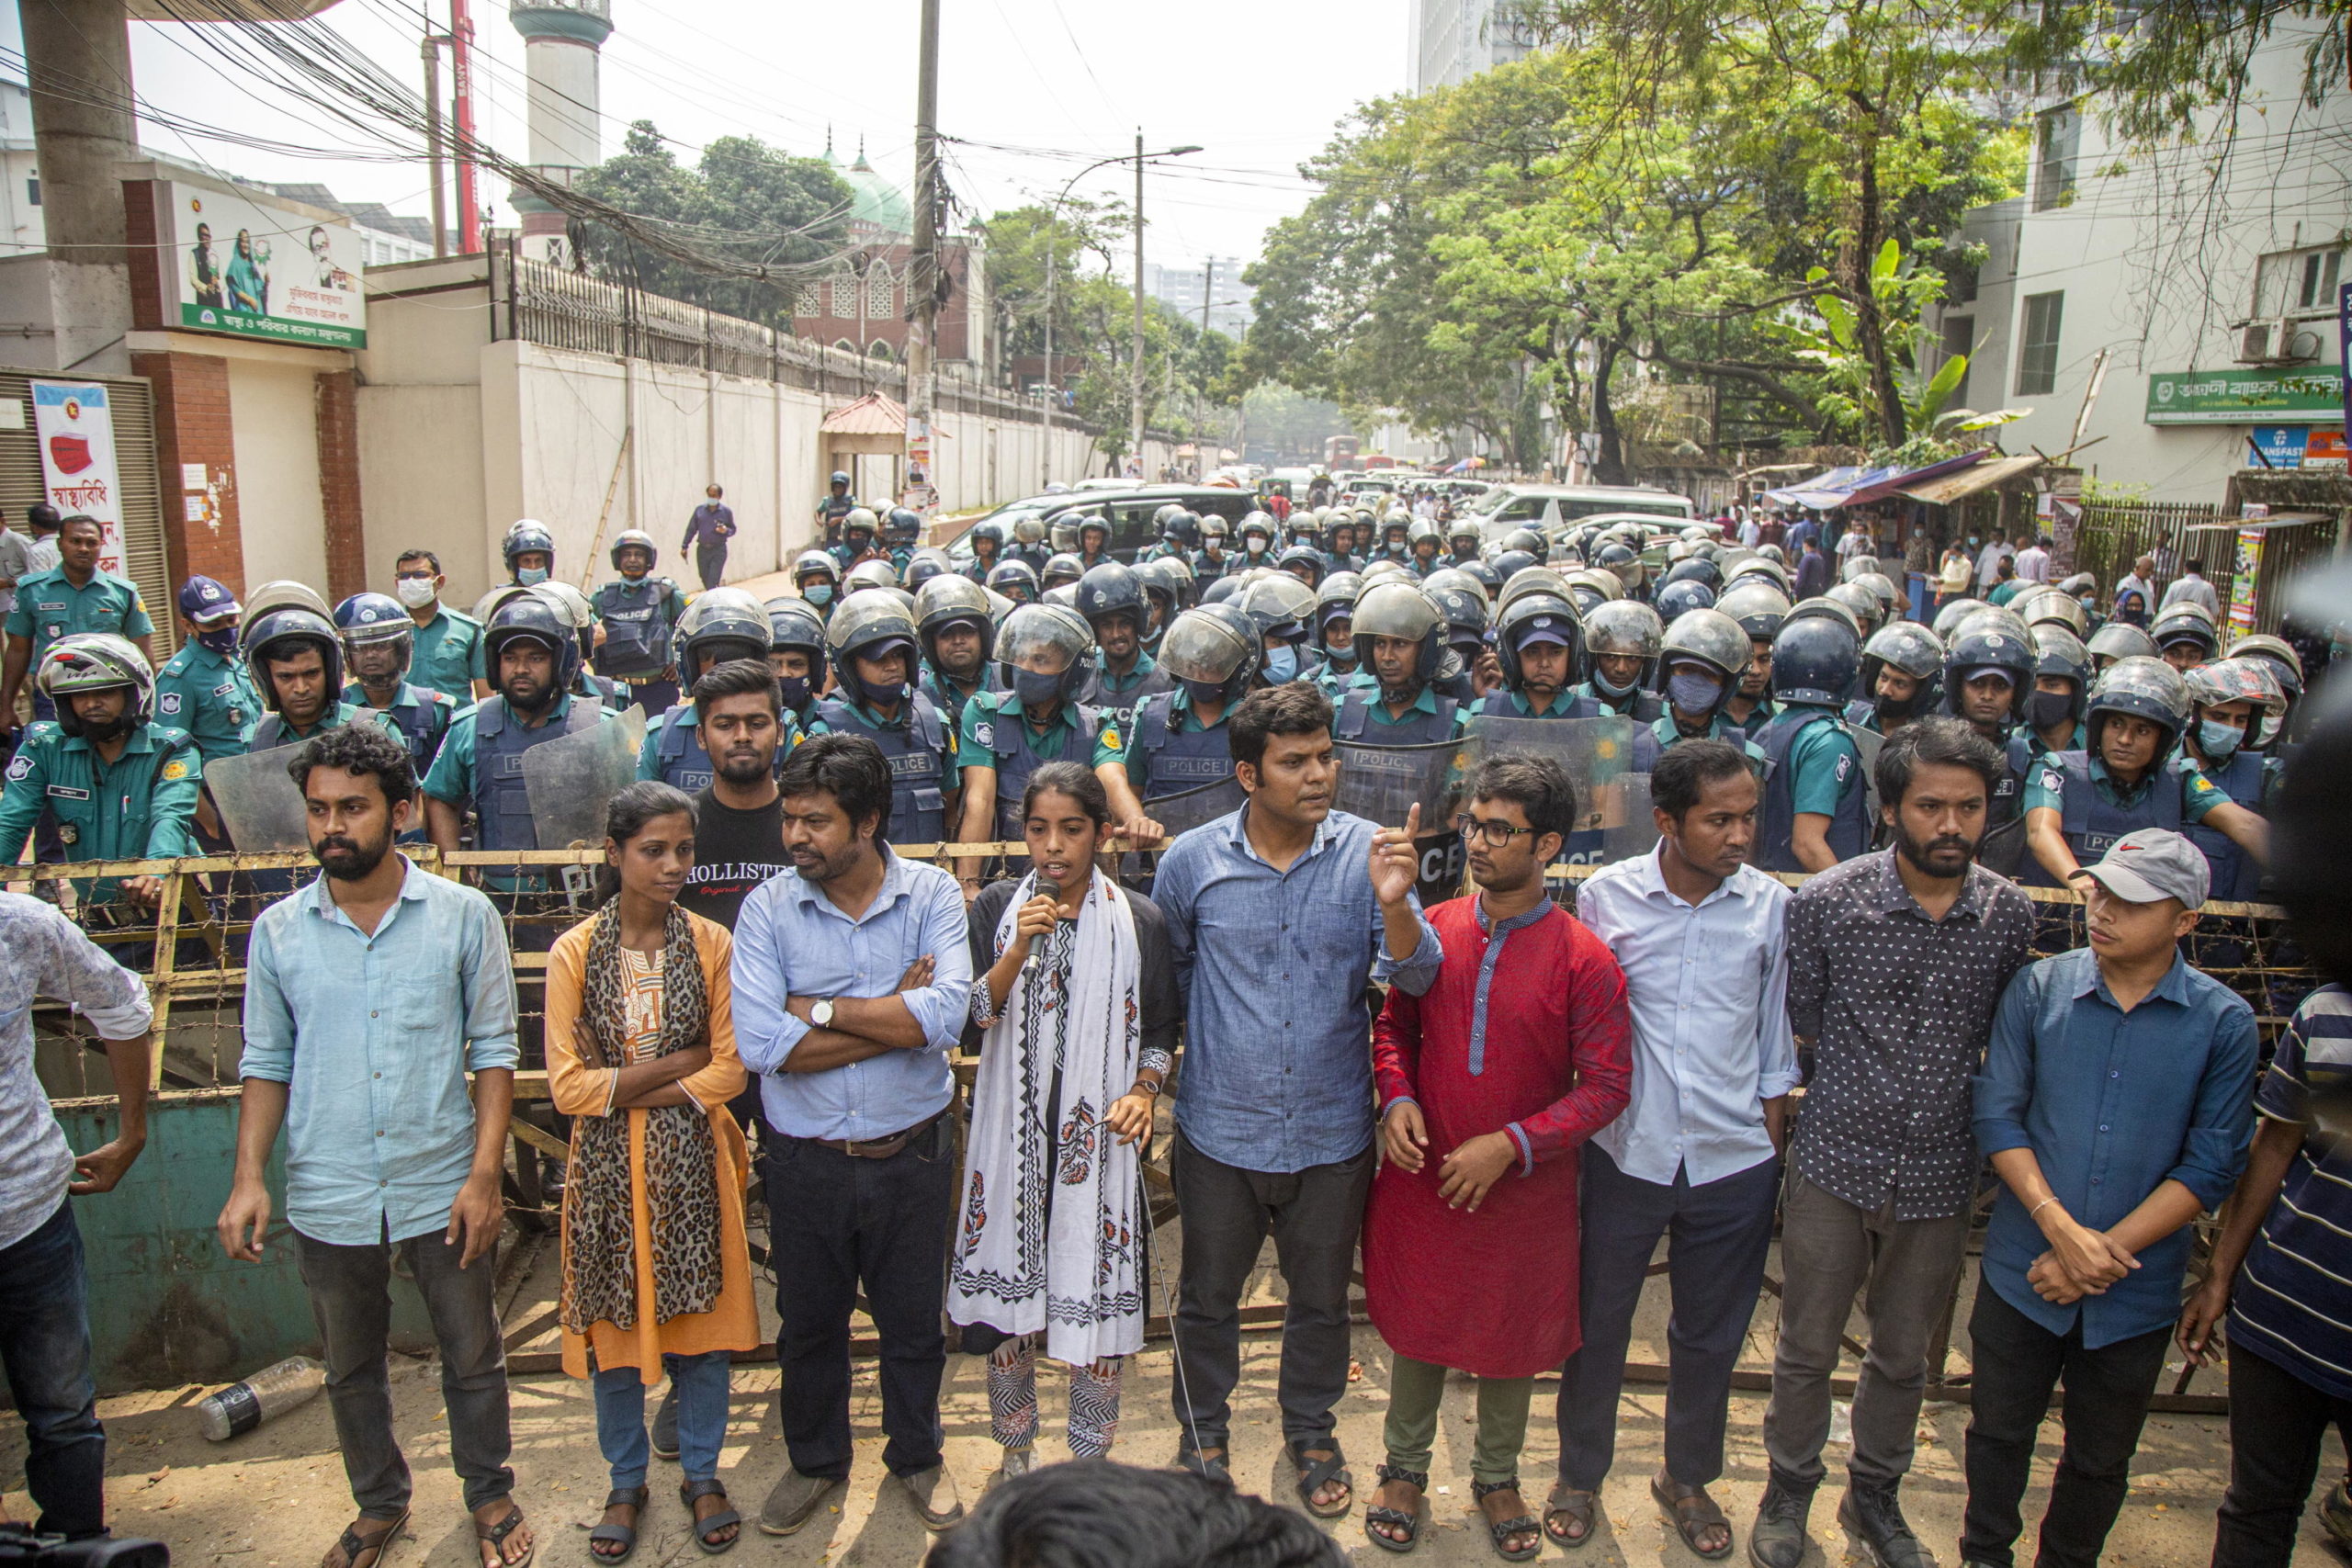 Gli studenti del Bangladesh gridano slogan contro il Governo